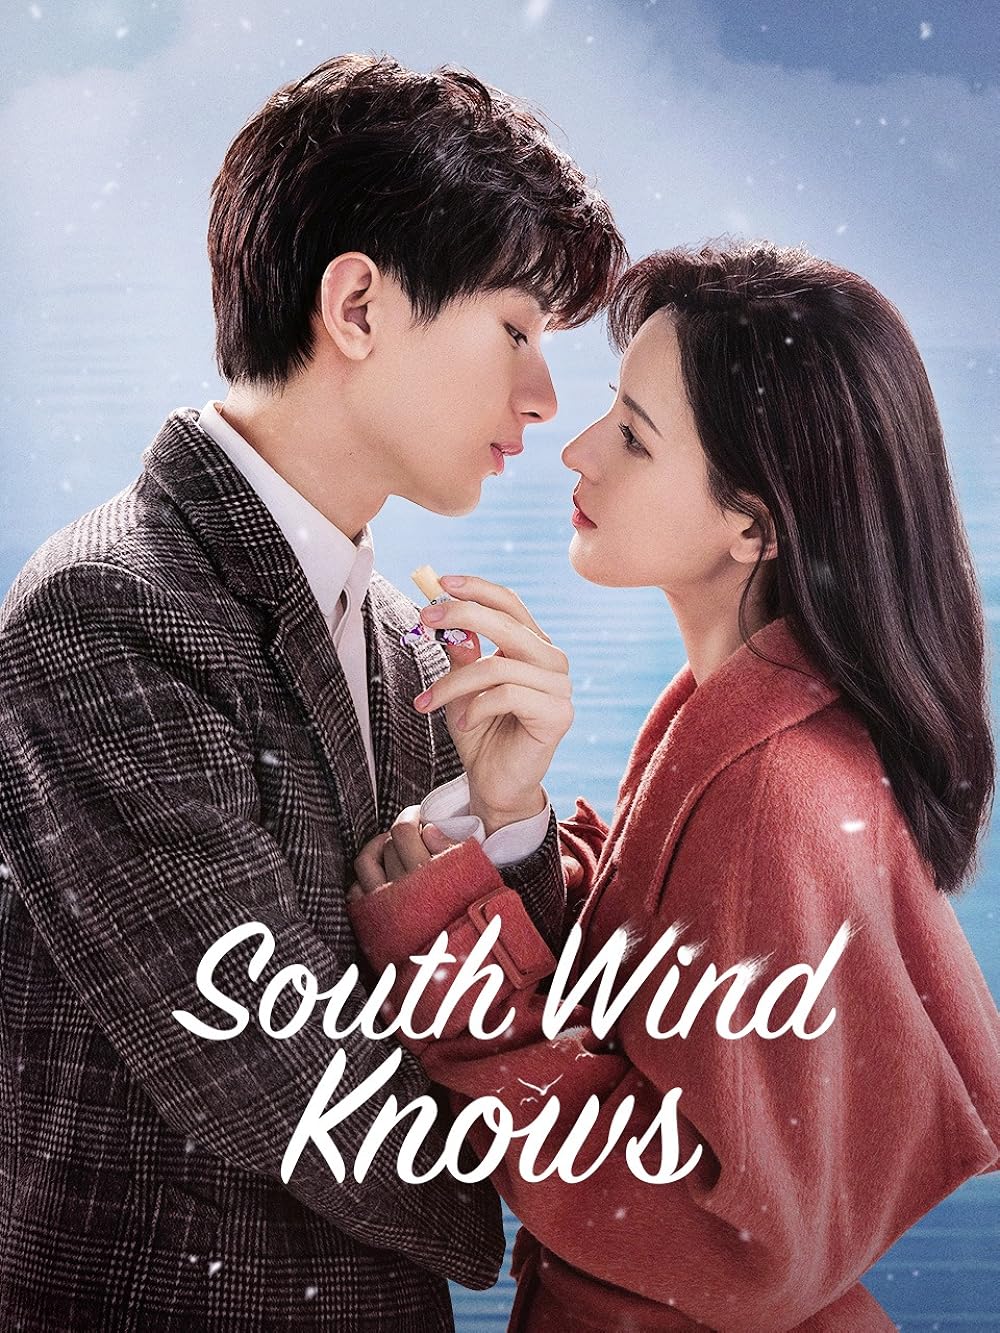 Phim mới nhất của Thành Nghị: Gió Nam hiểu lòng tôi – South Wind Knows (2023)